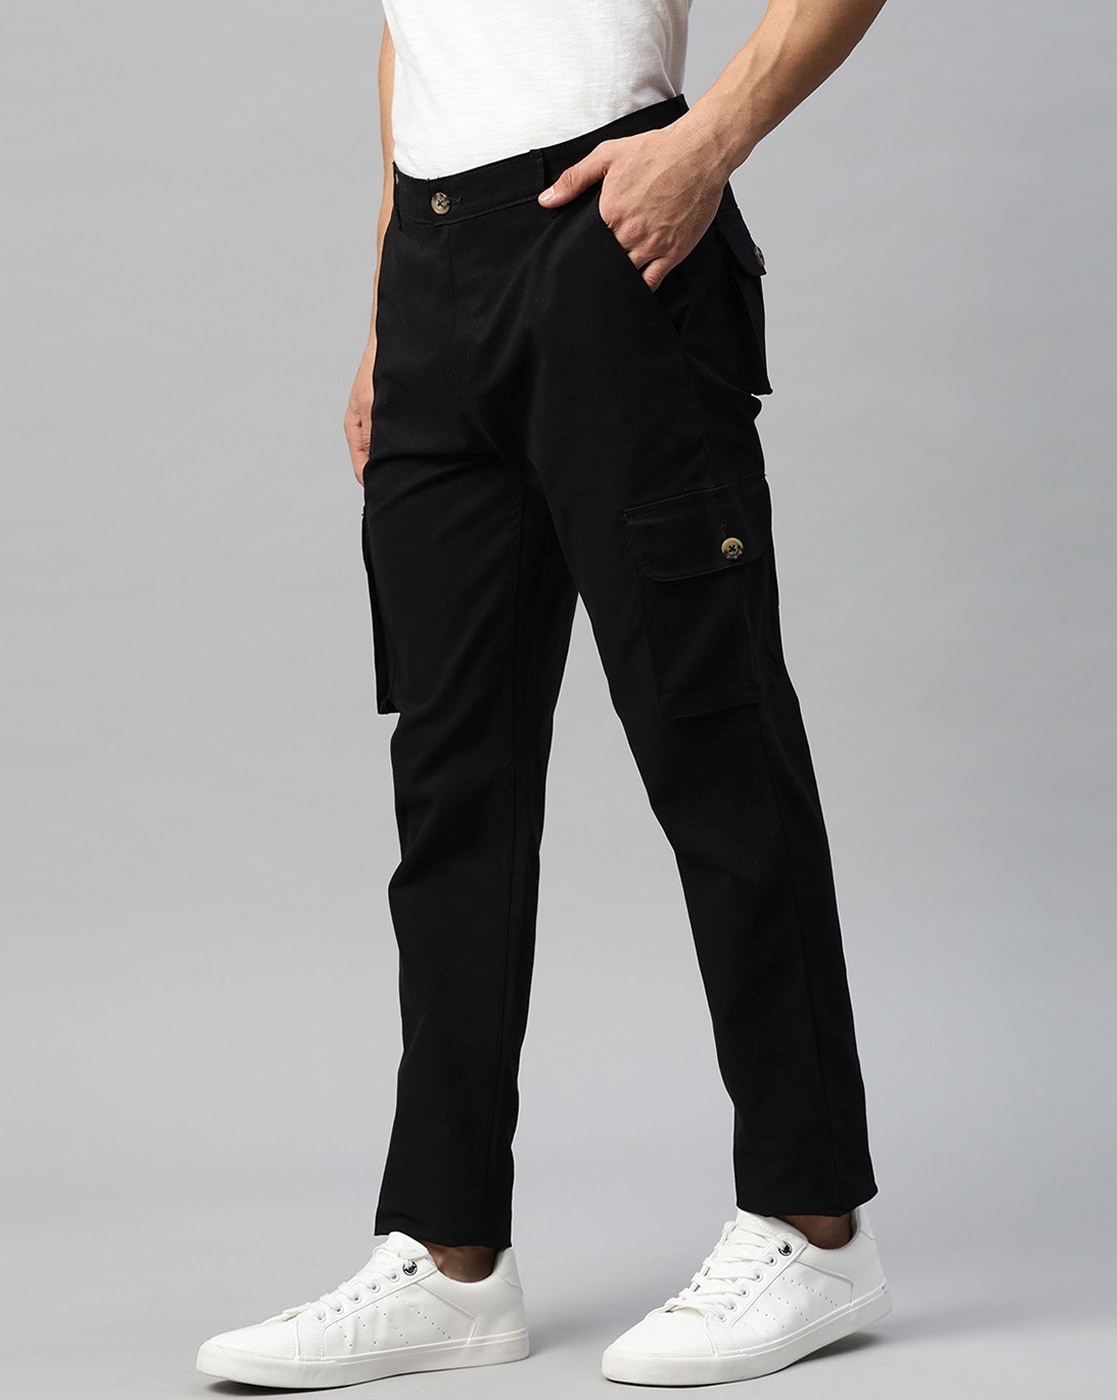 Buy Black Trousers  Pants for Men by Hubberholme Online  Ajiocom